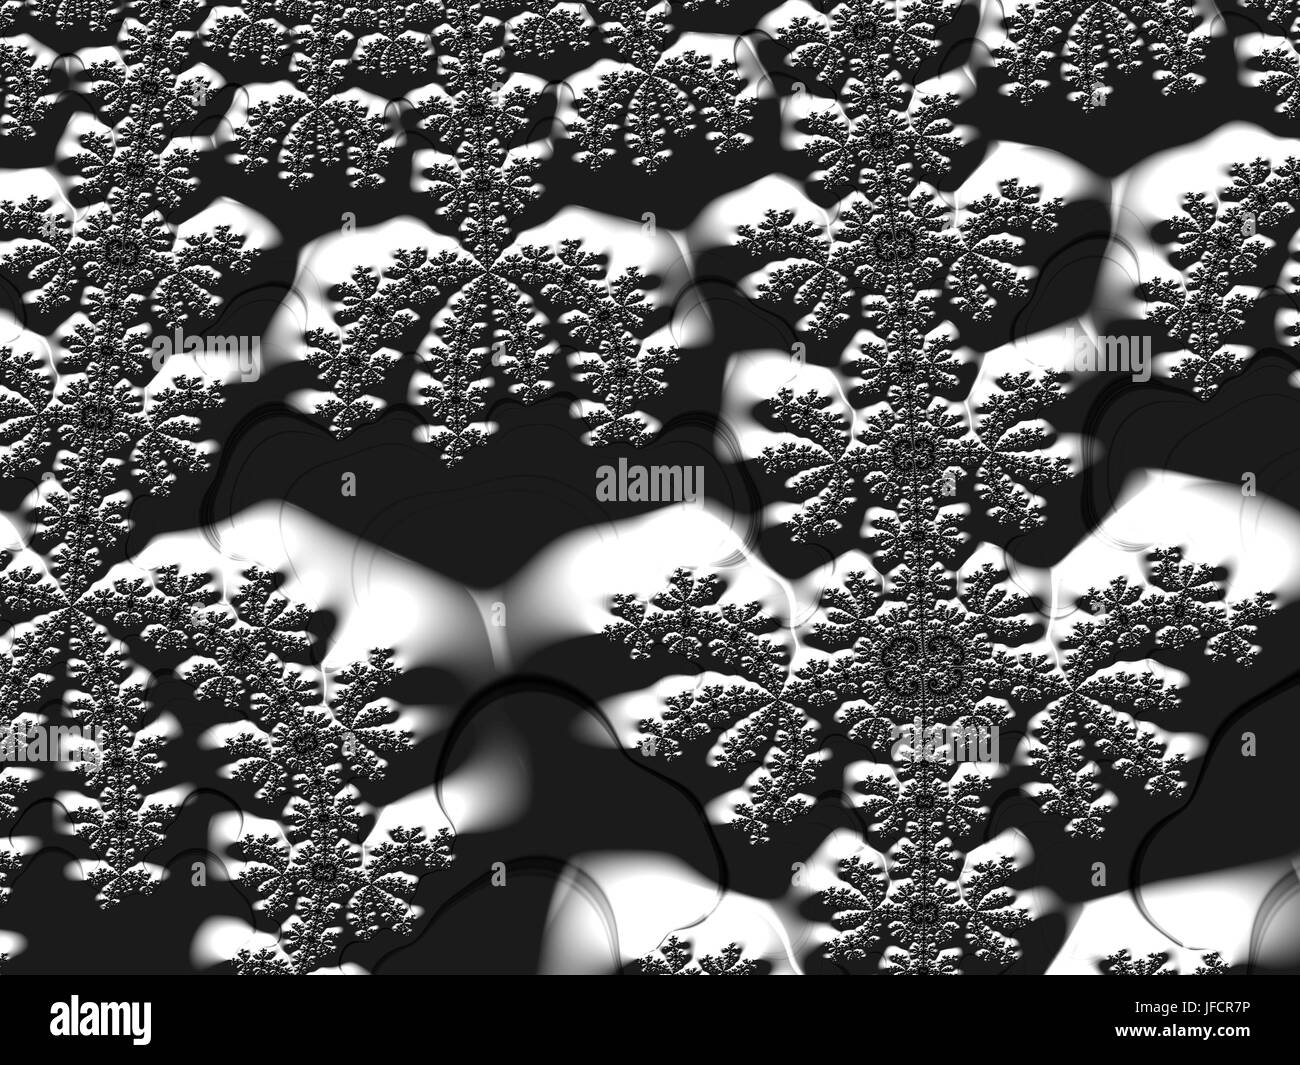 Fraktale Muster Abbildung in schwarz / weiß Stockfoto